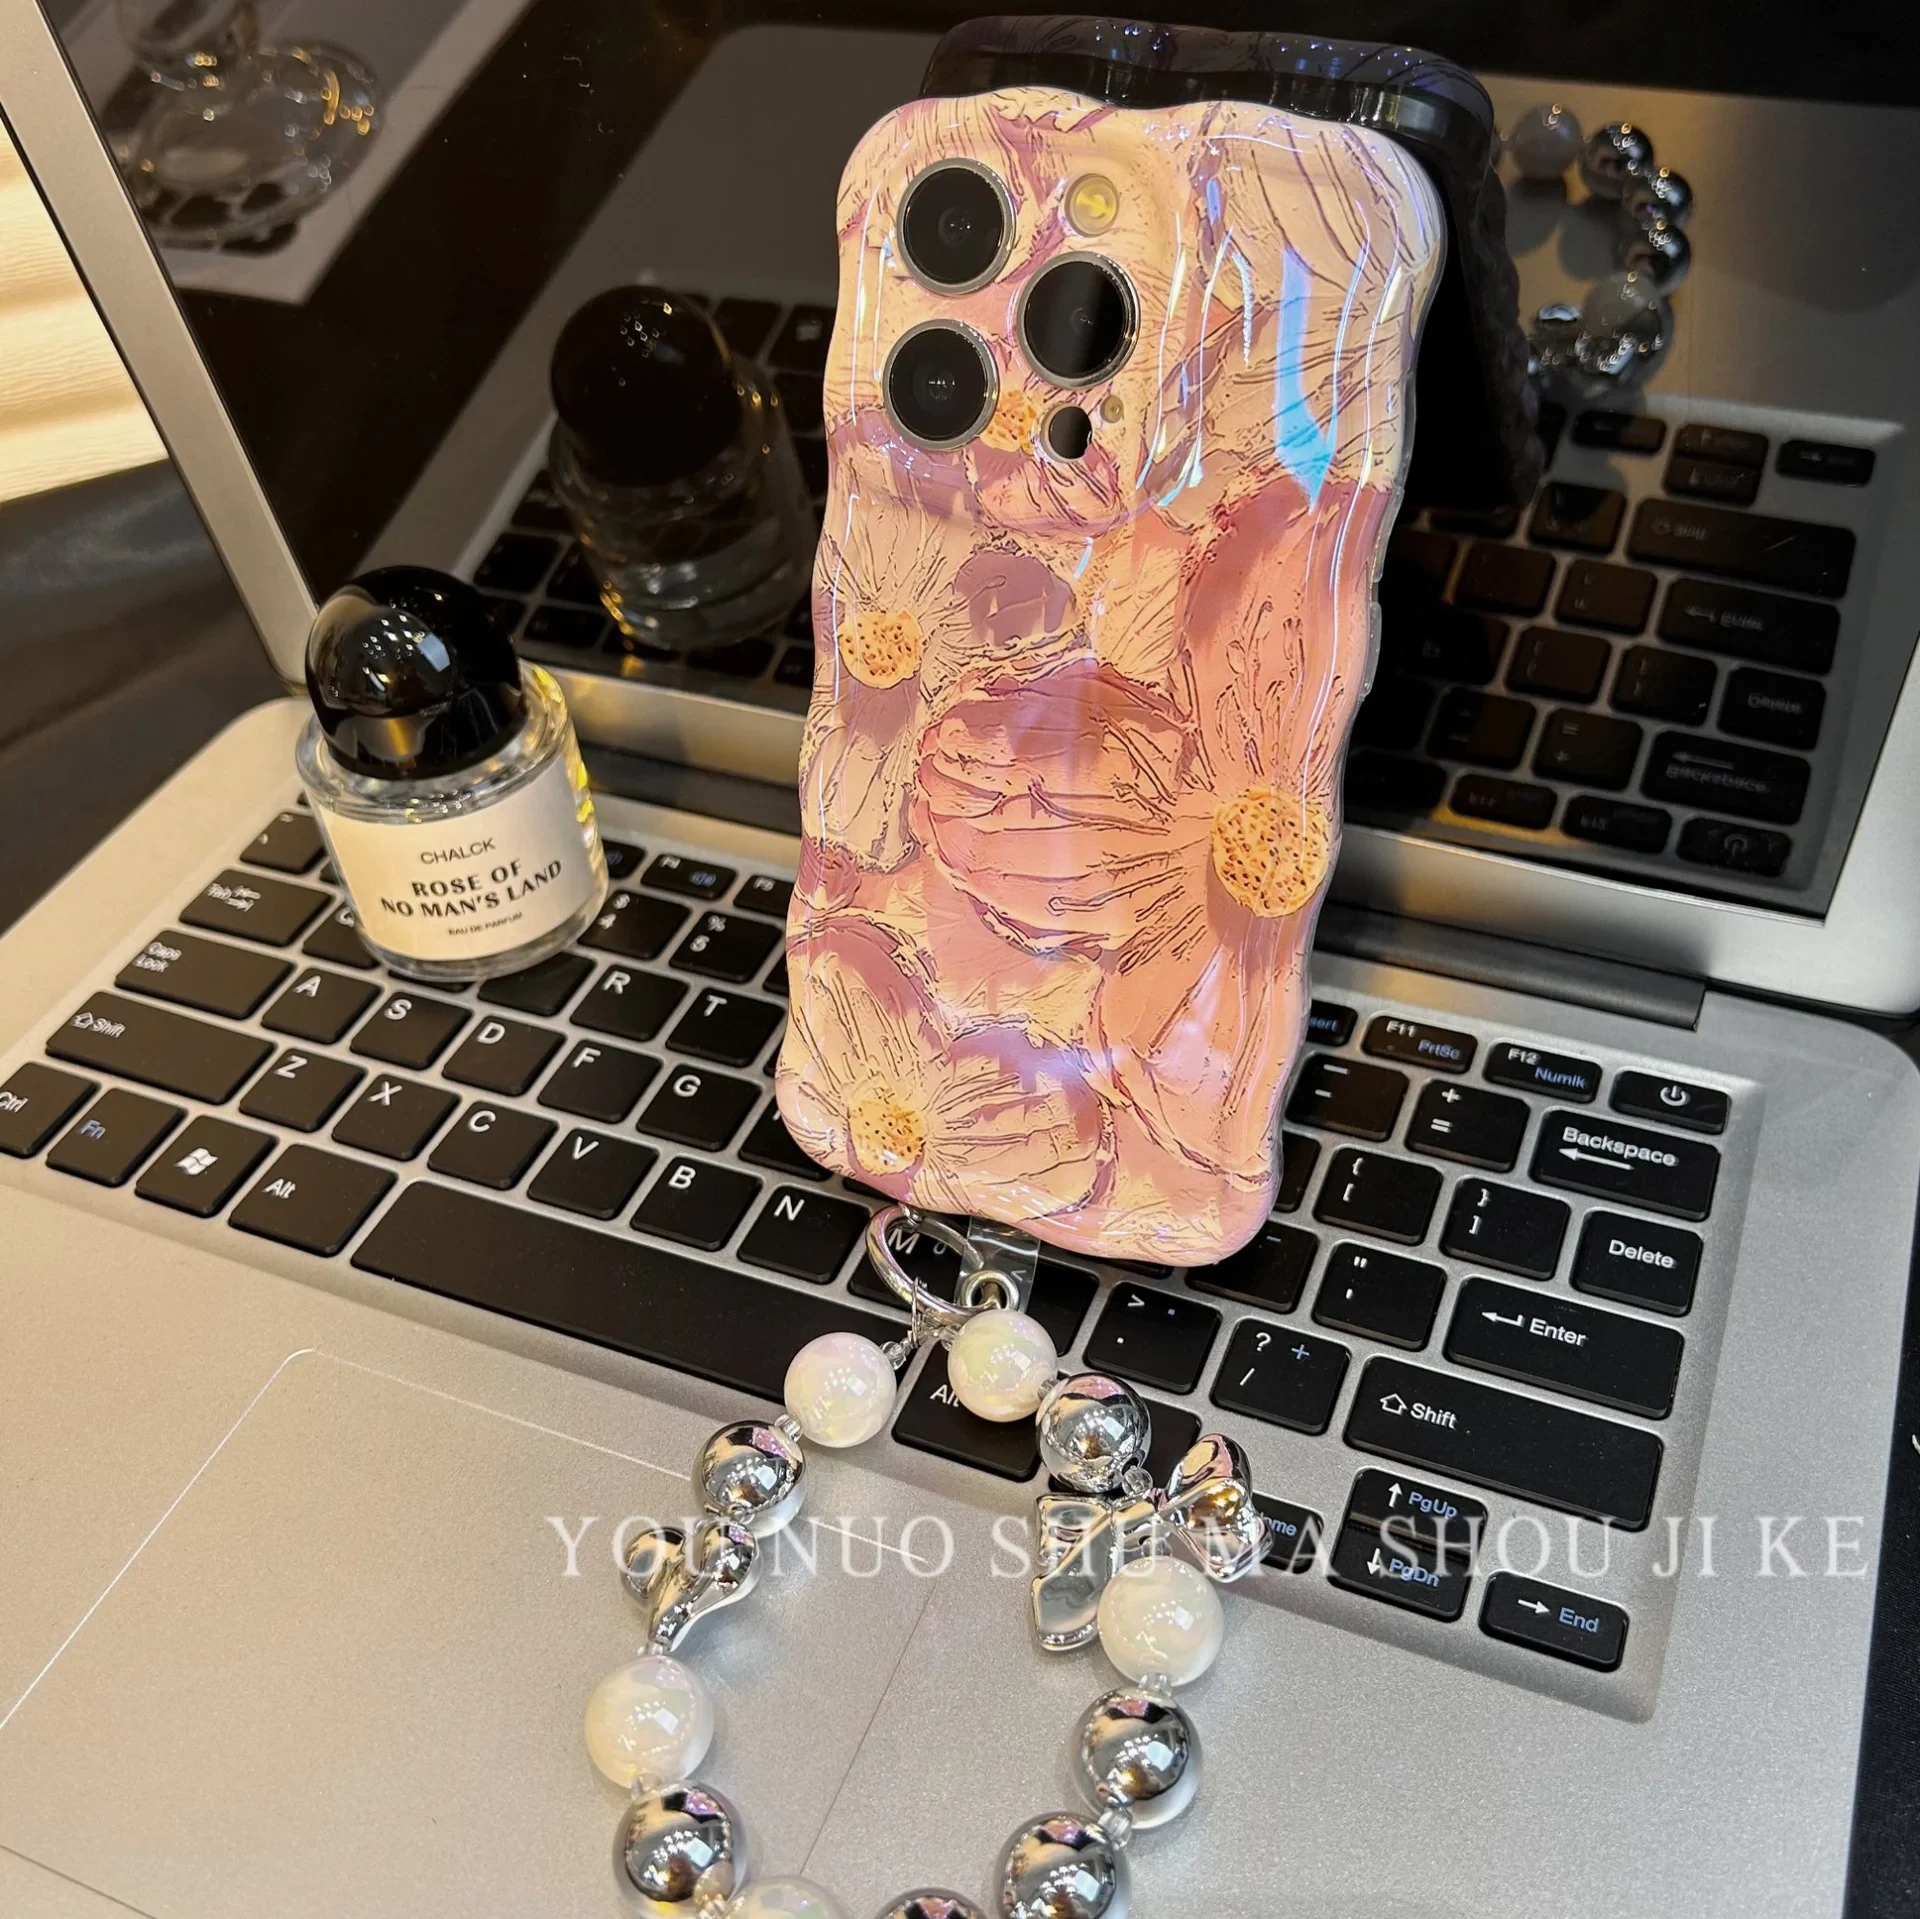 Exquisite Oil-Painted iPhone Case